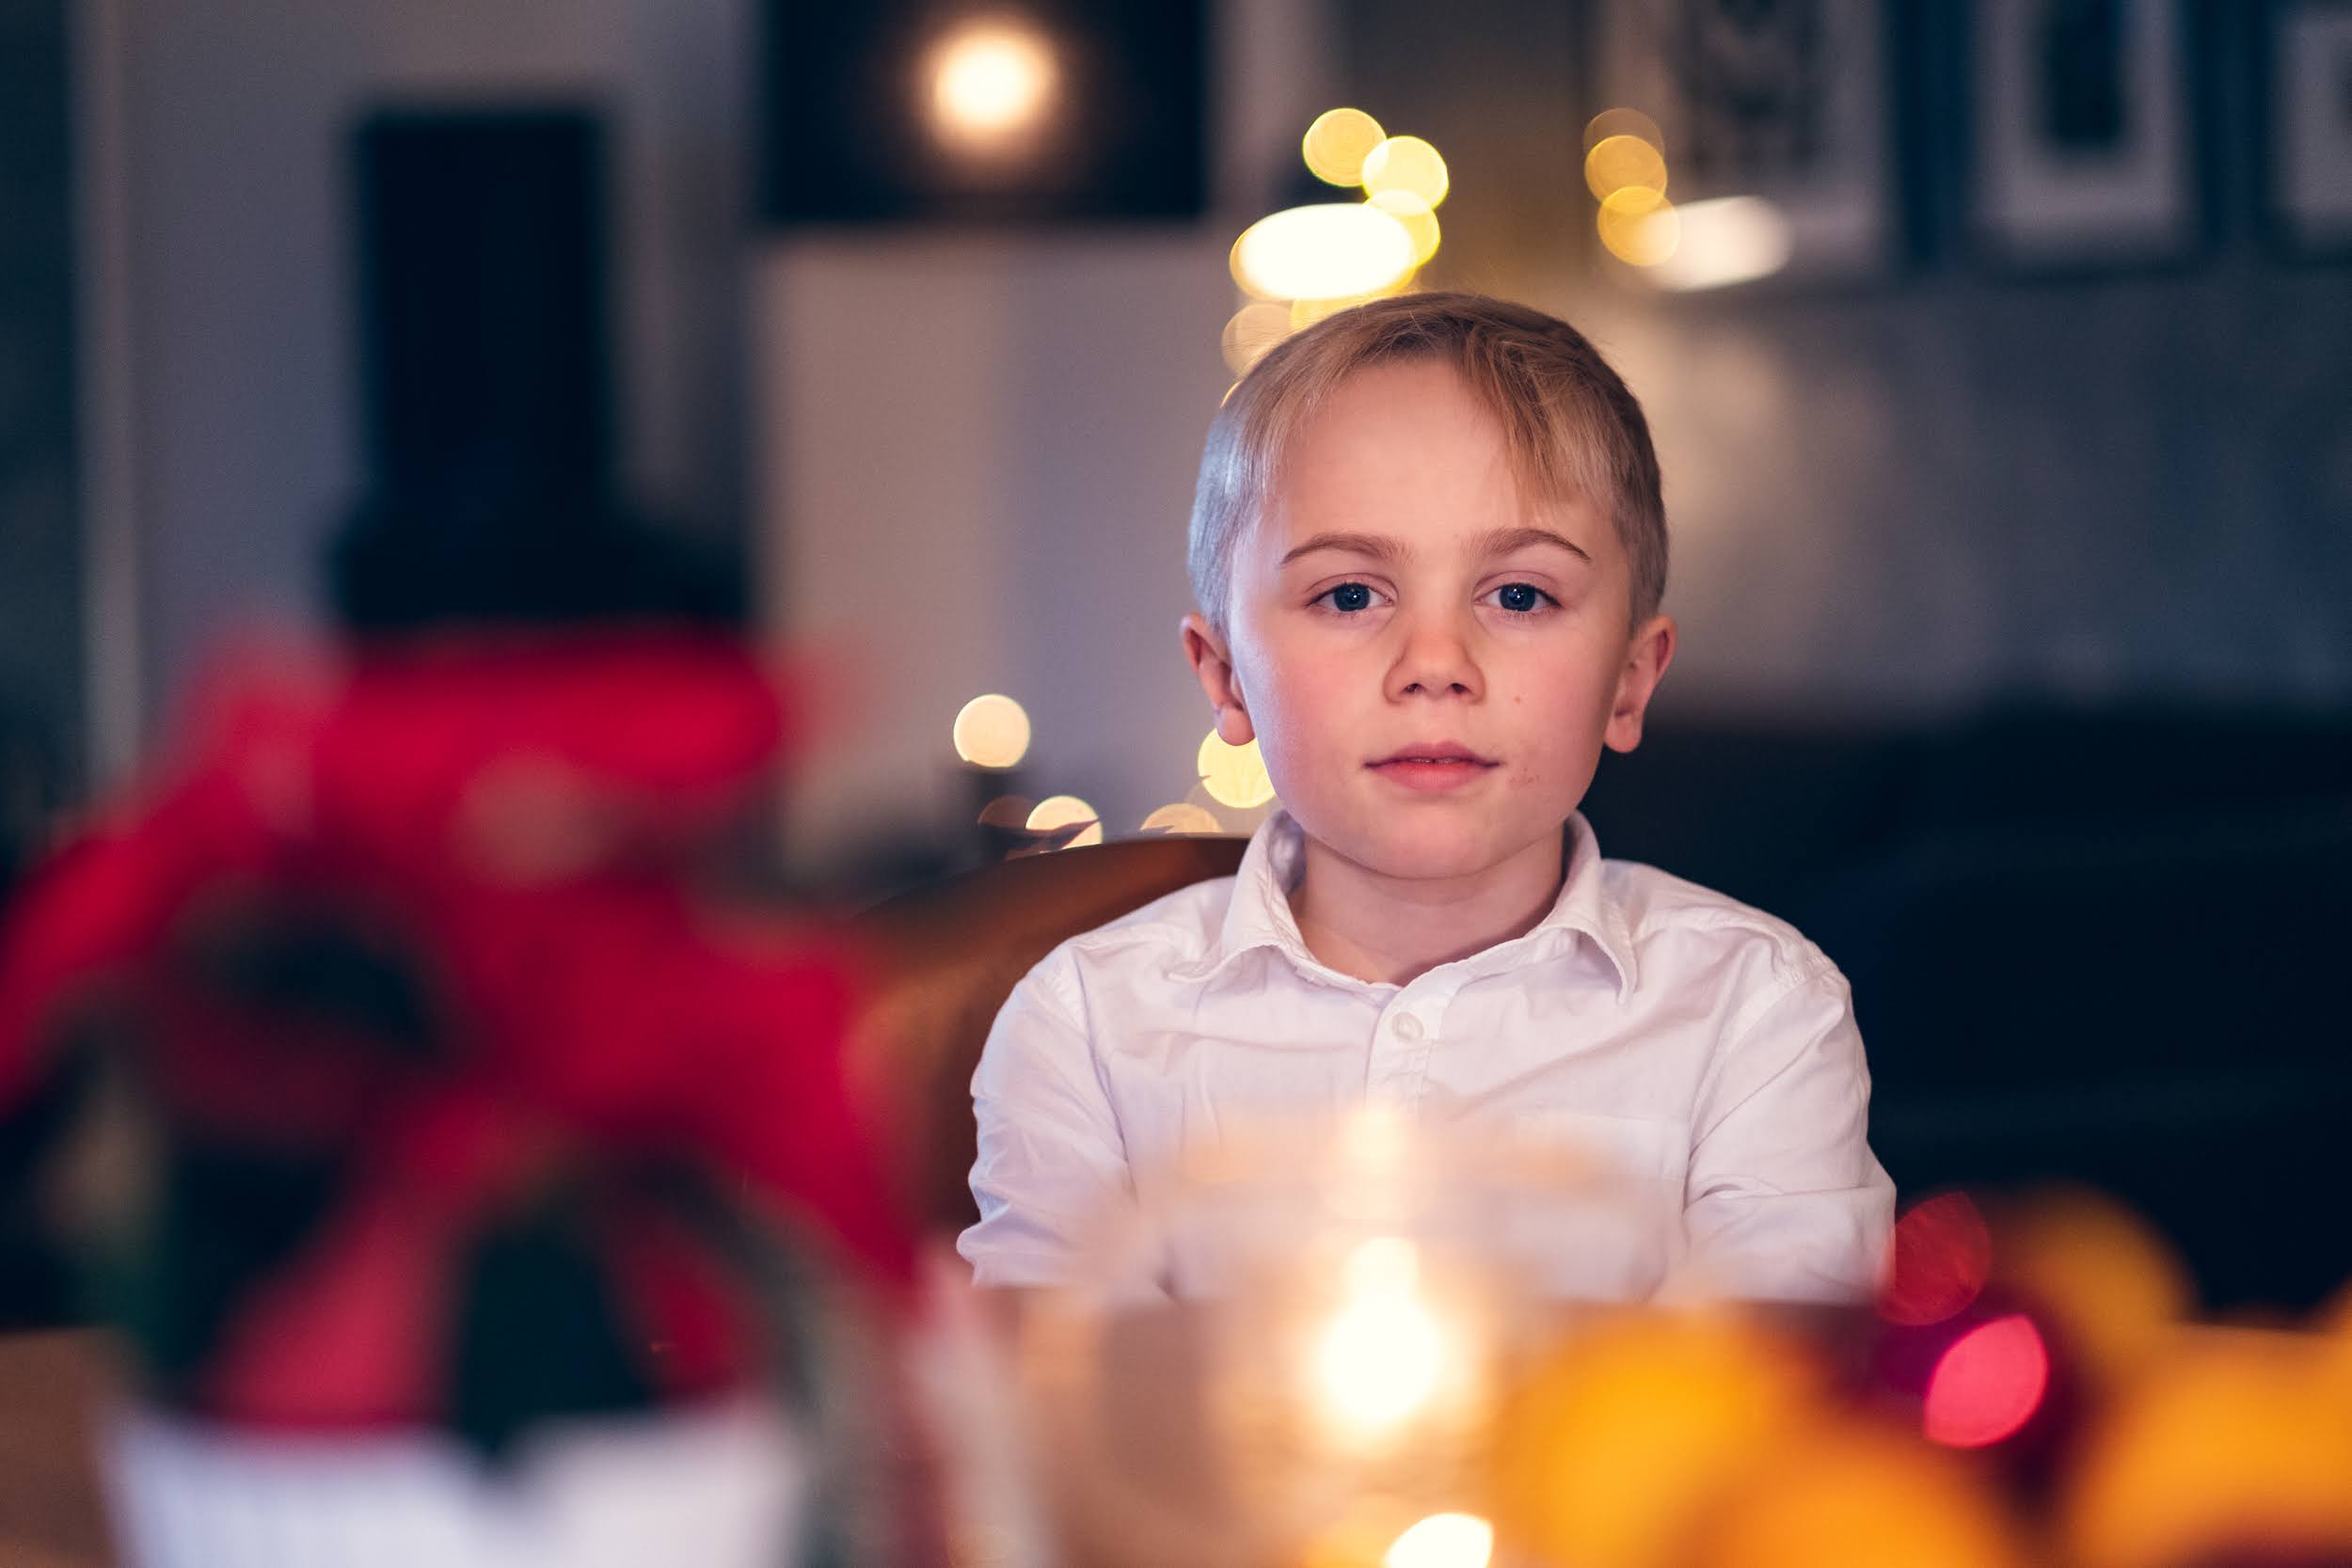 En gutt i hvit skjorte ser inn i kamera. Han sitter i en julepyntet stue.